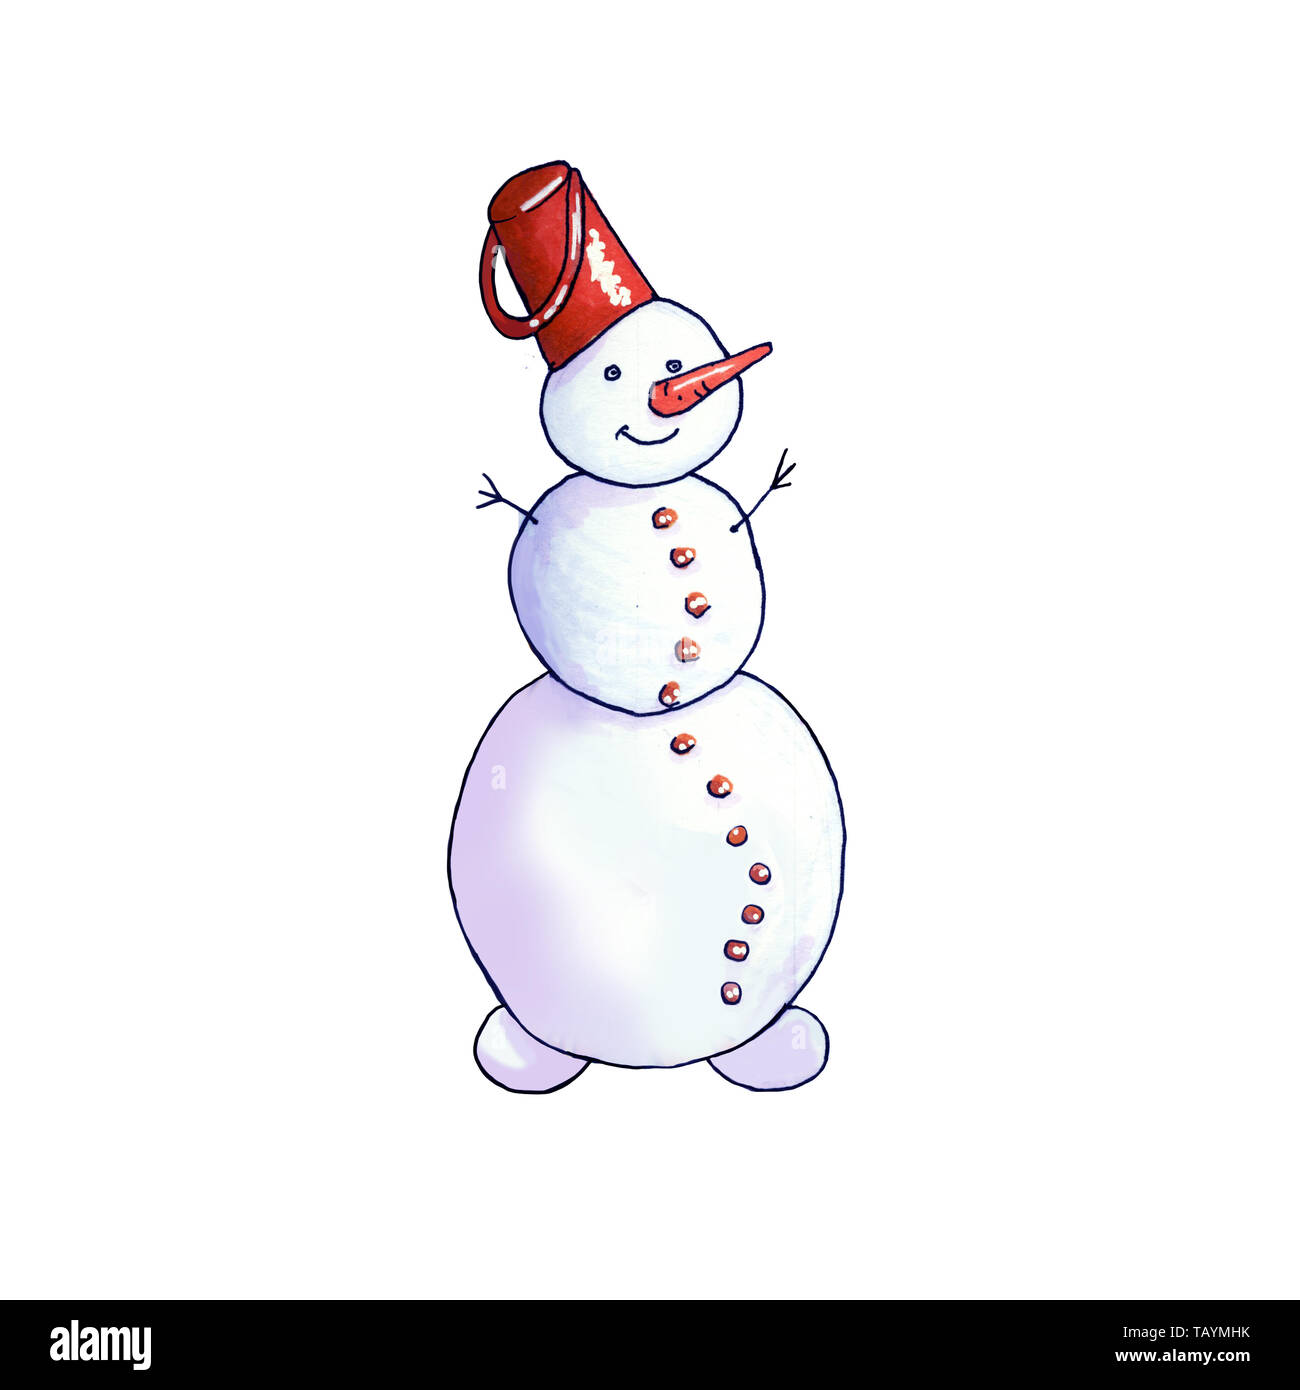 Snowman ilustración dibujada a mano. Decoración de Navidad, Año Nuevo. Muñeco de nieve con el cucharón en la cabeza, la zanahoria aislado elemento de diseño. Tarjeta de felicitación de invierno alegre, póster, imágenes prediseñadas en color Foto de stock